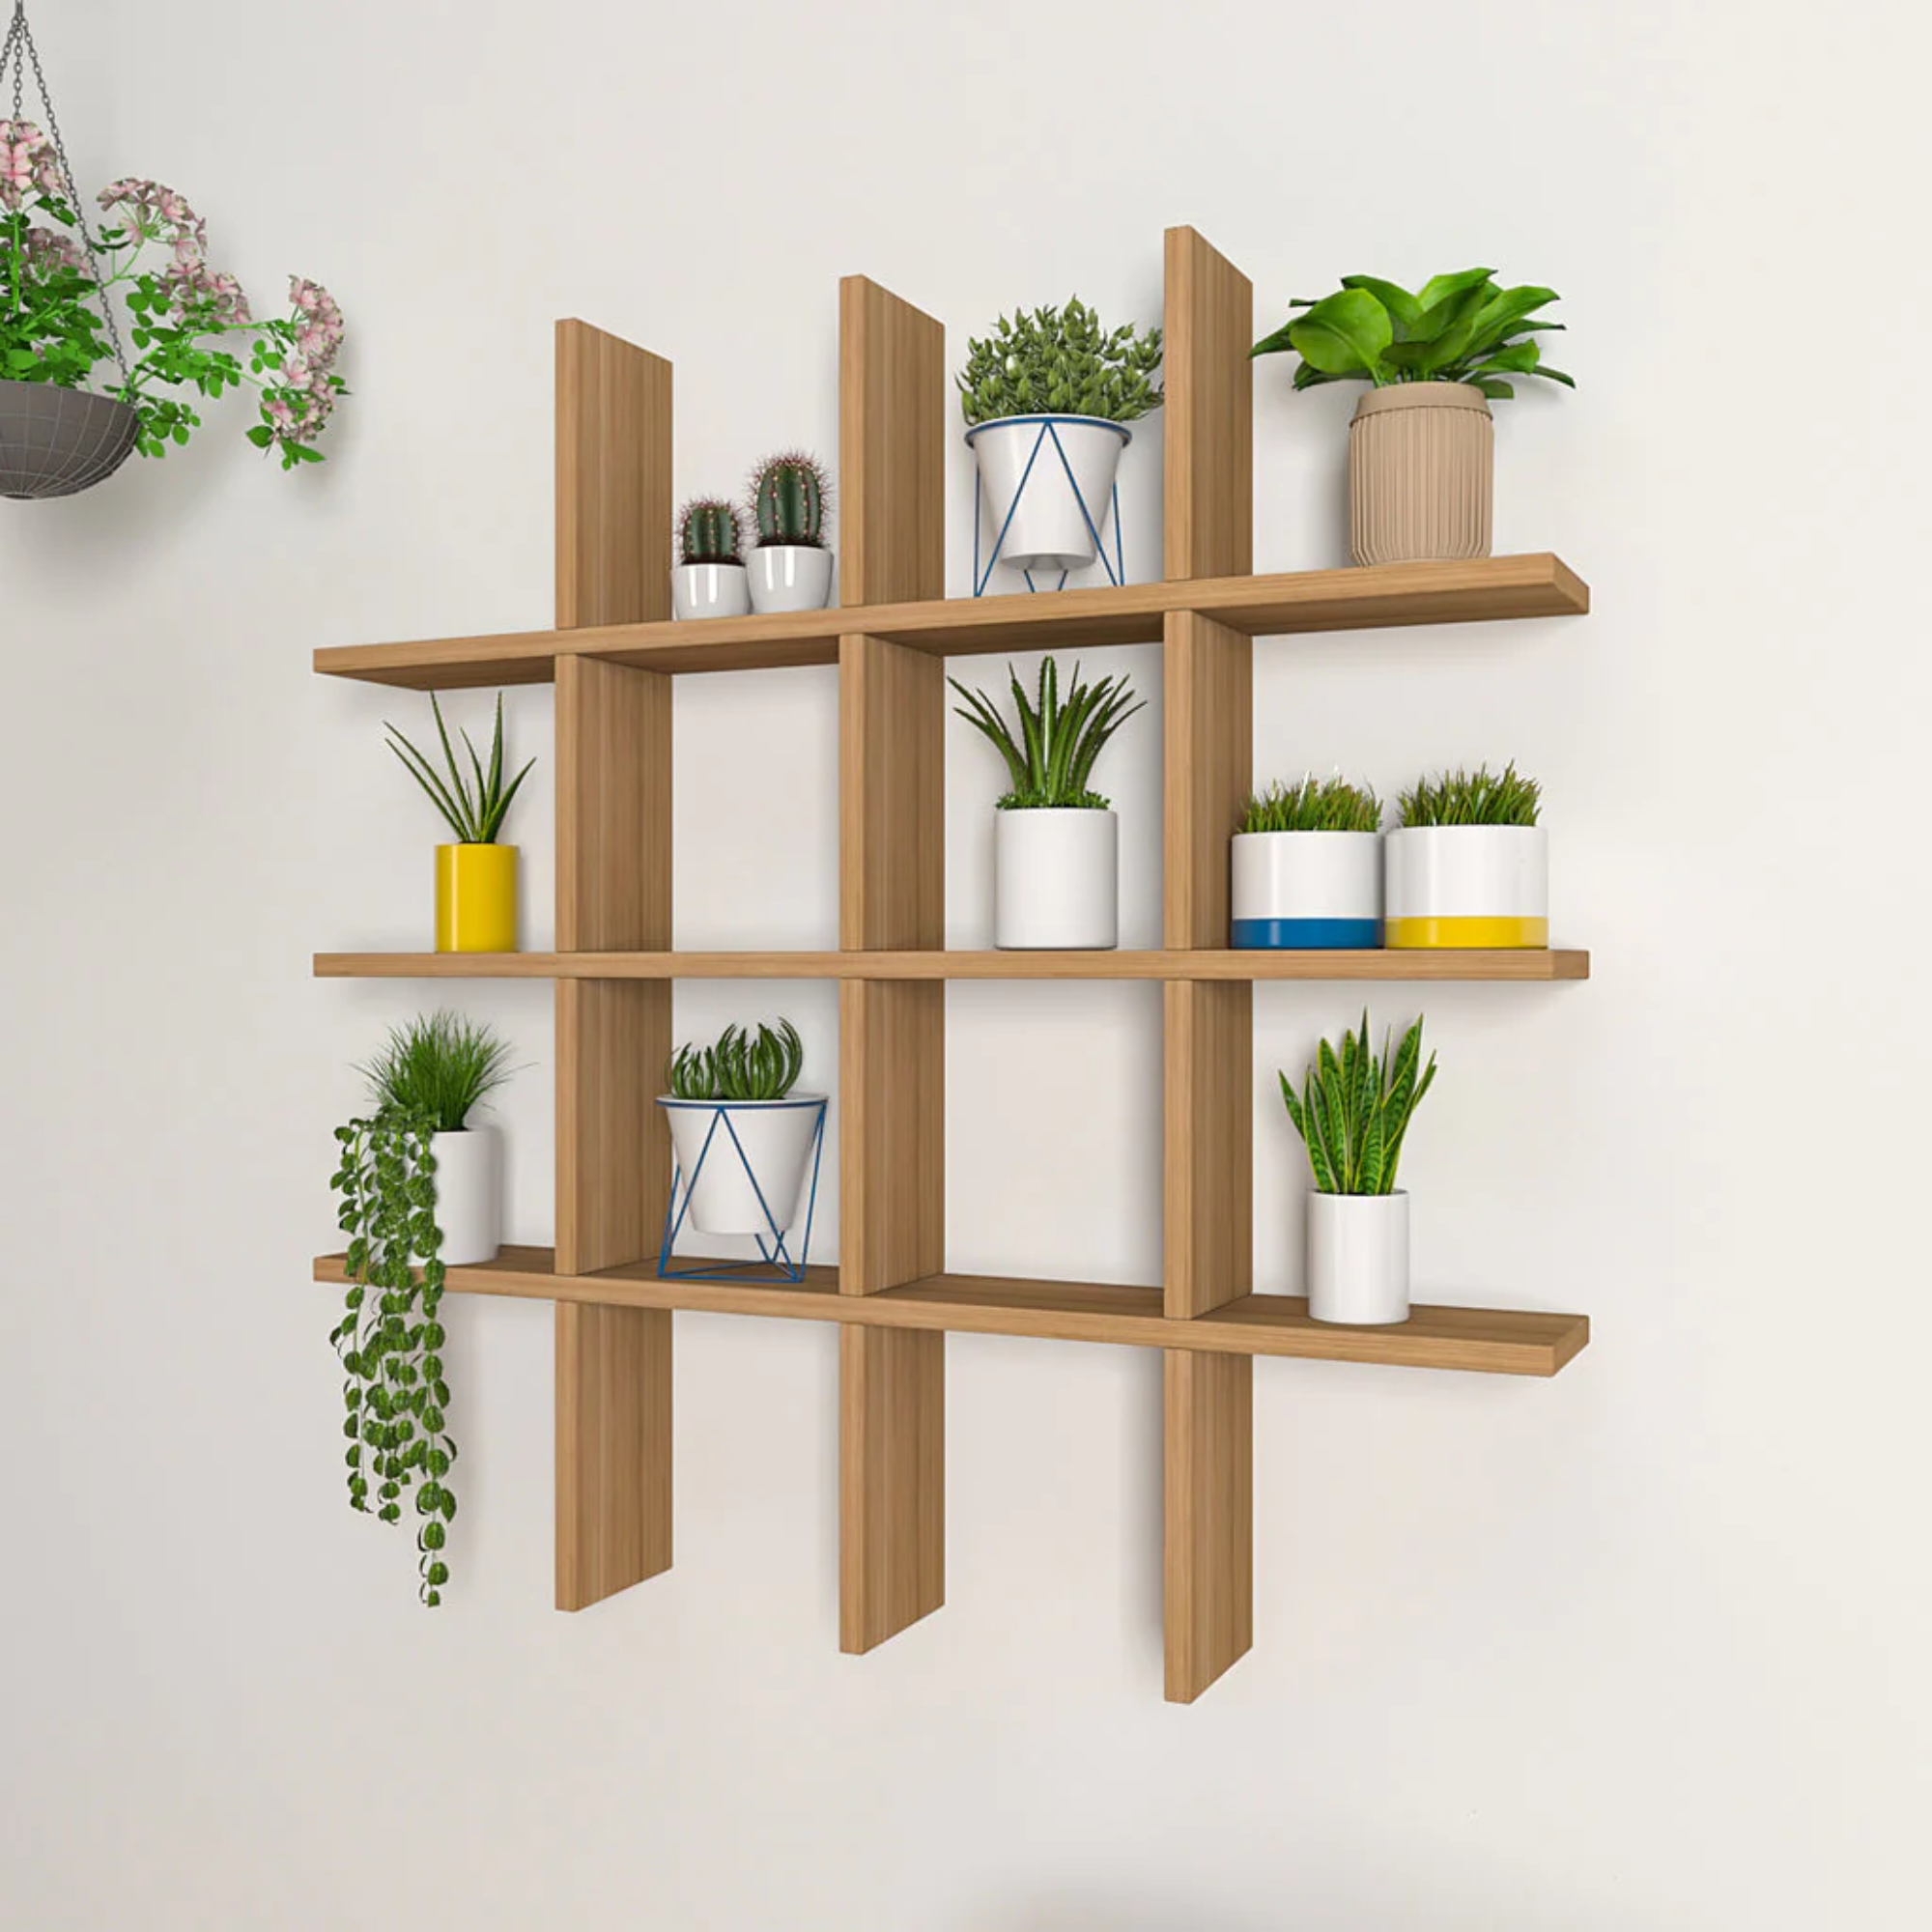 Aesthetic Block Designer With Light Oak Finish Planter Shelves